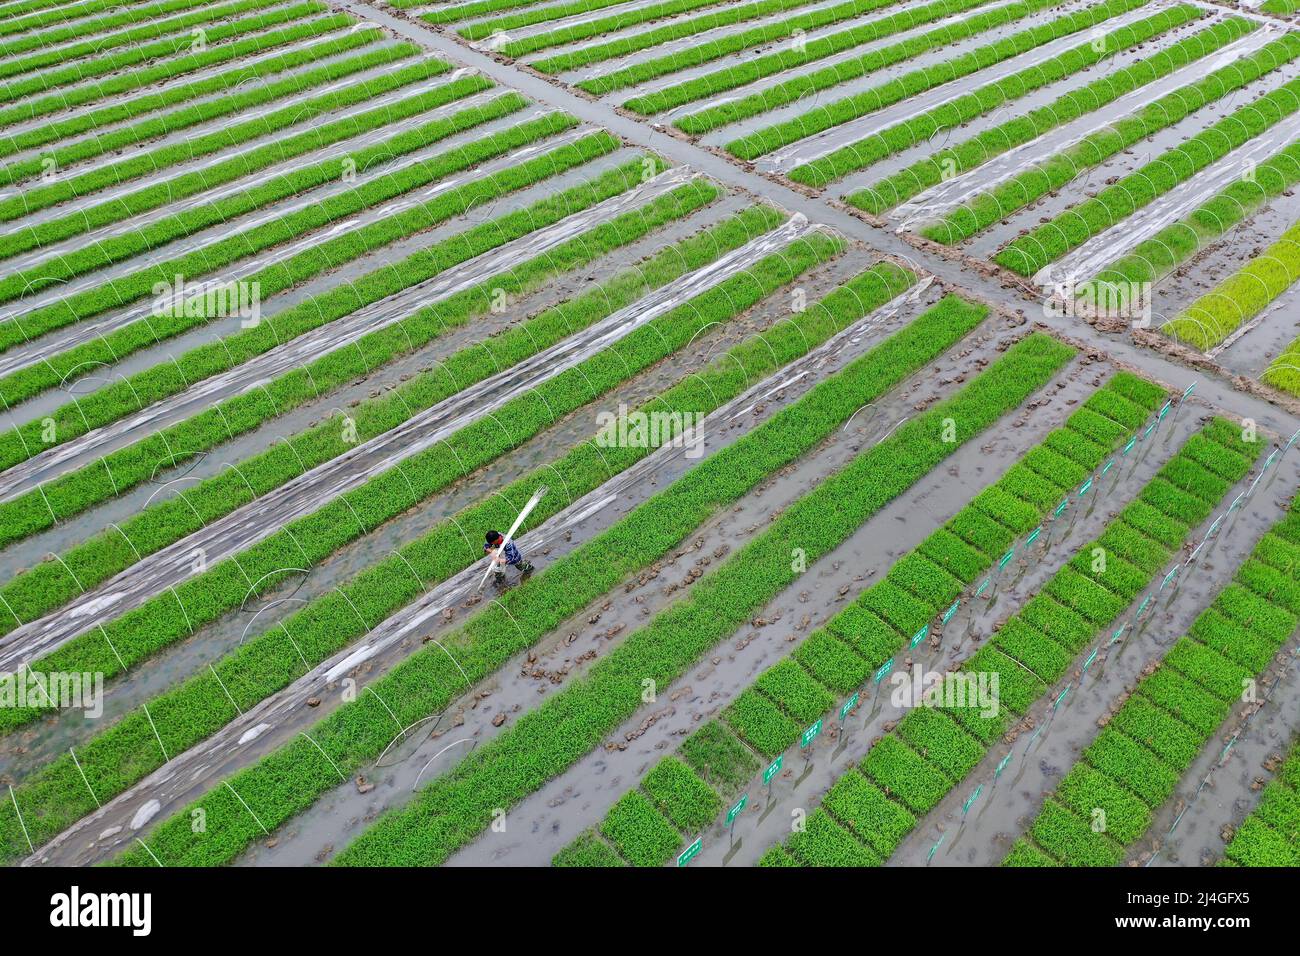 SUINING, CHINA - 14. APRIL 2022 - Ein Landwirt entfernt dünne Filmstangen, um das Wachstum von Sämlingen in einer hochwertigen Reiszuchtbasis in Suining, Sichuan, zu fördern Stockfoto